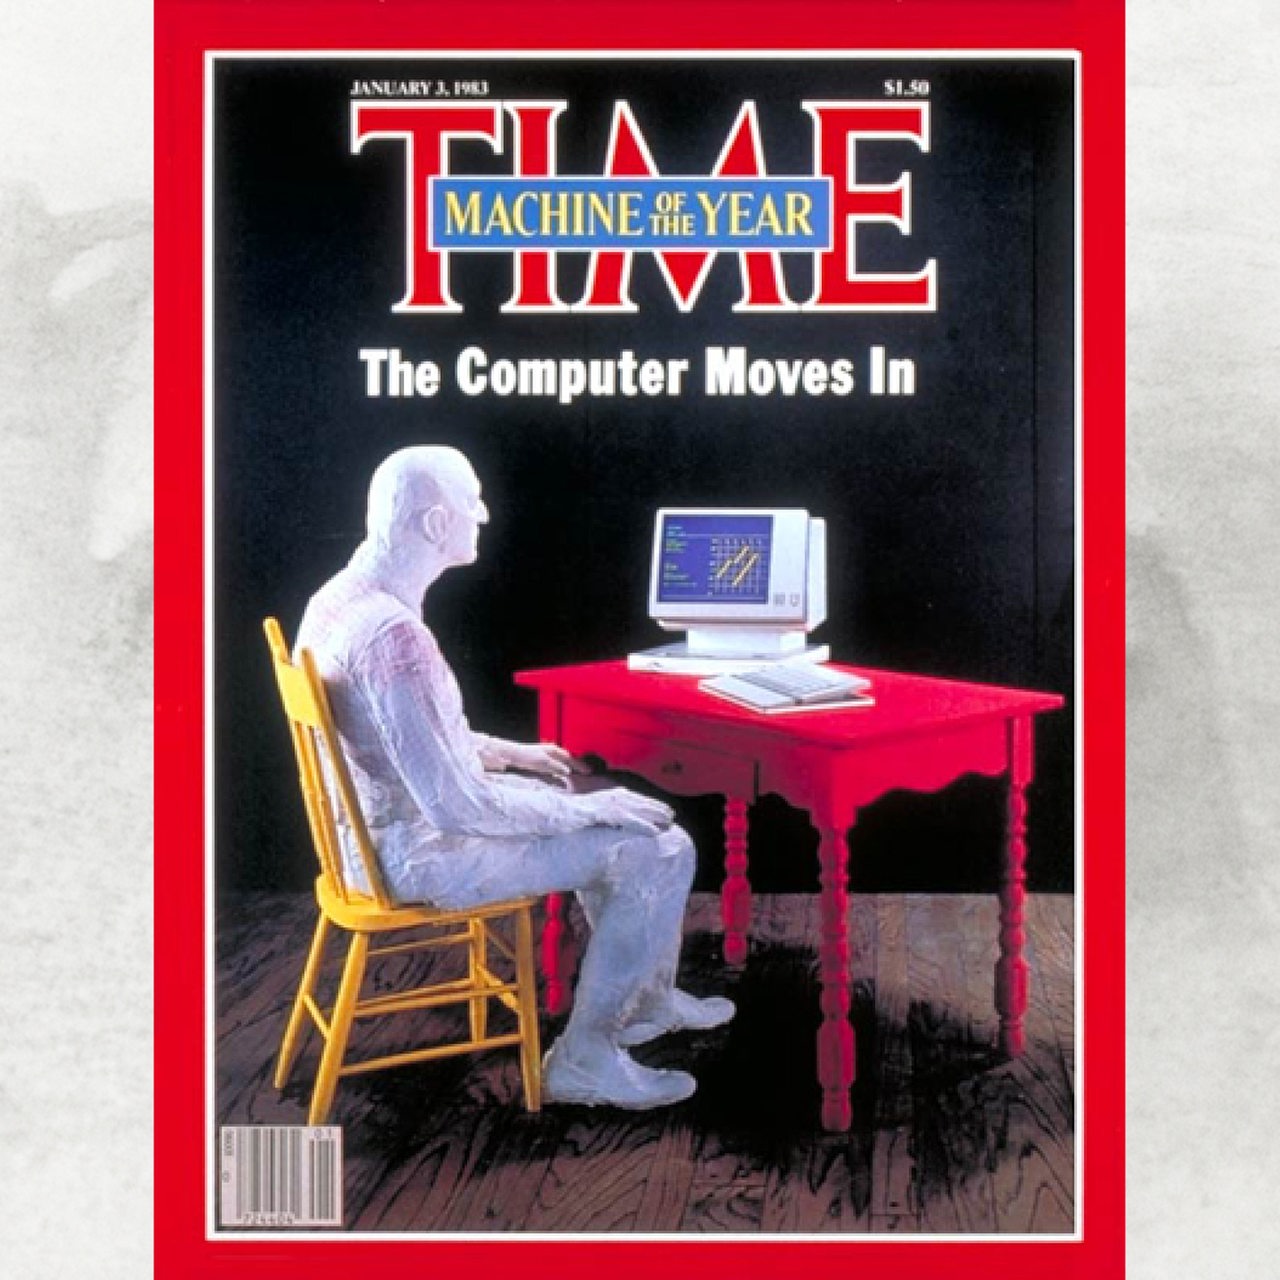 Cover der Time-Ausgabe Januar 1983 nach der Wahl der Machine des Jahres am 26.12.82